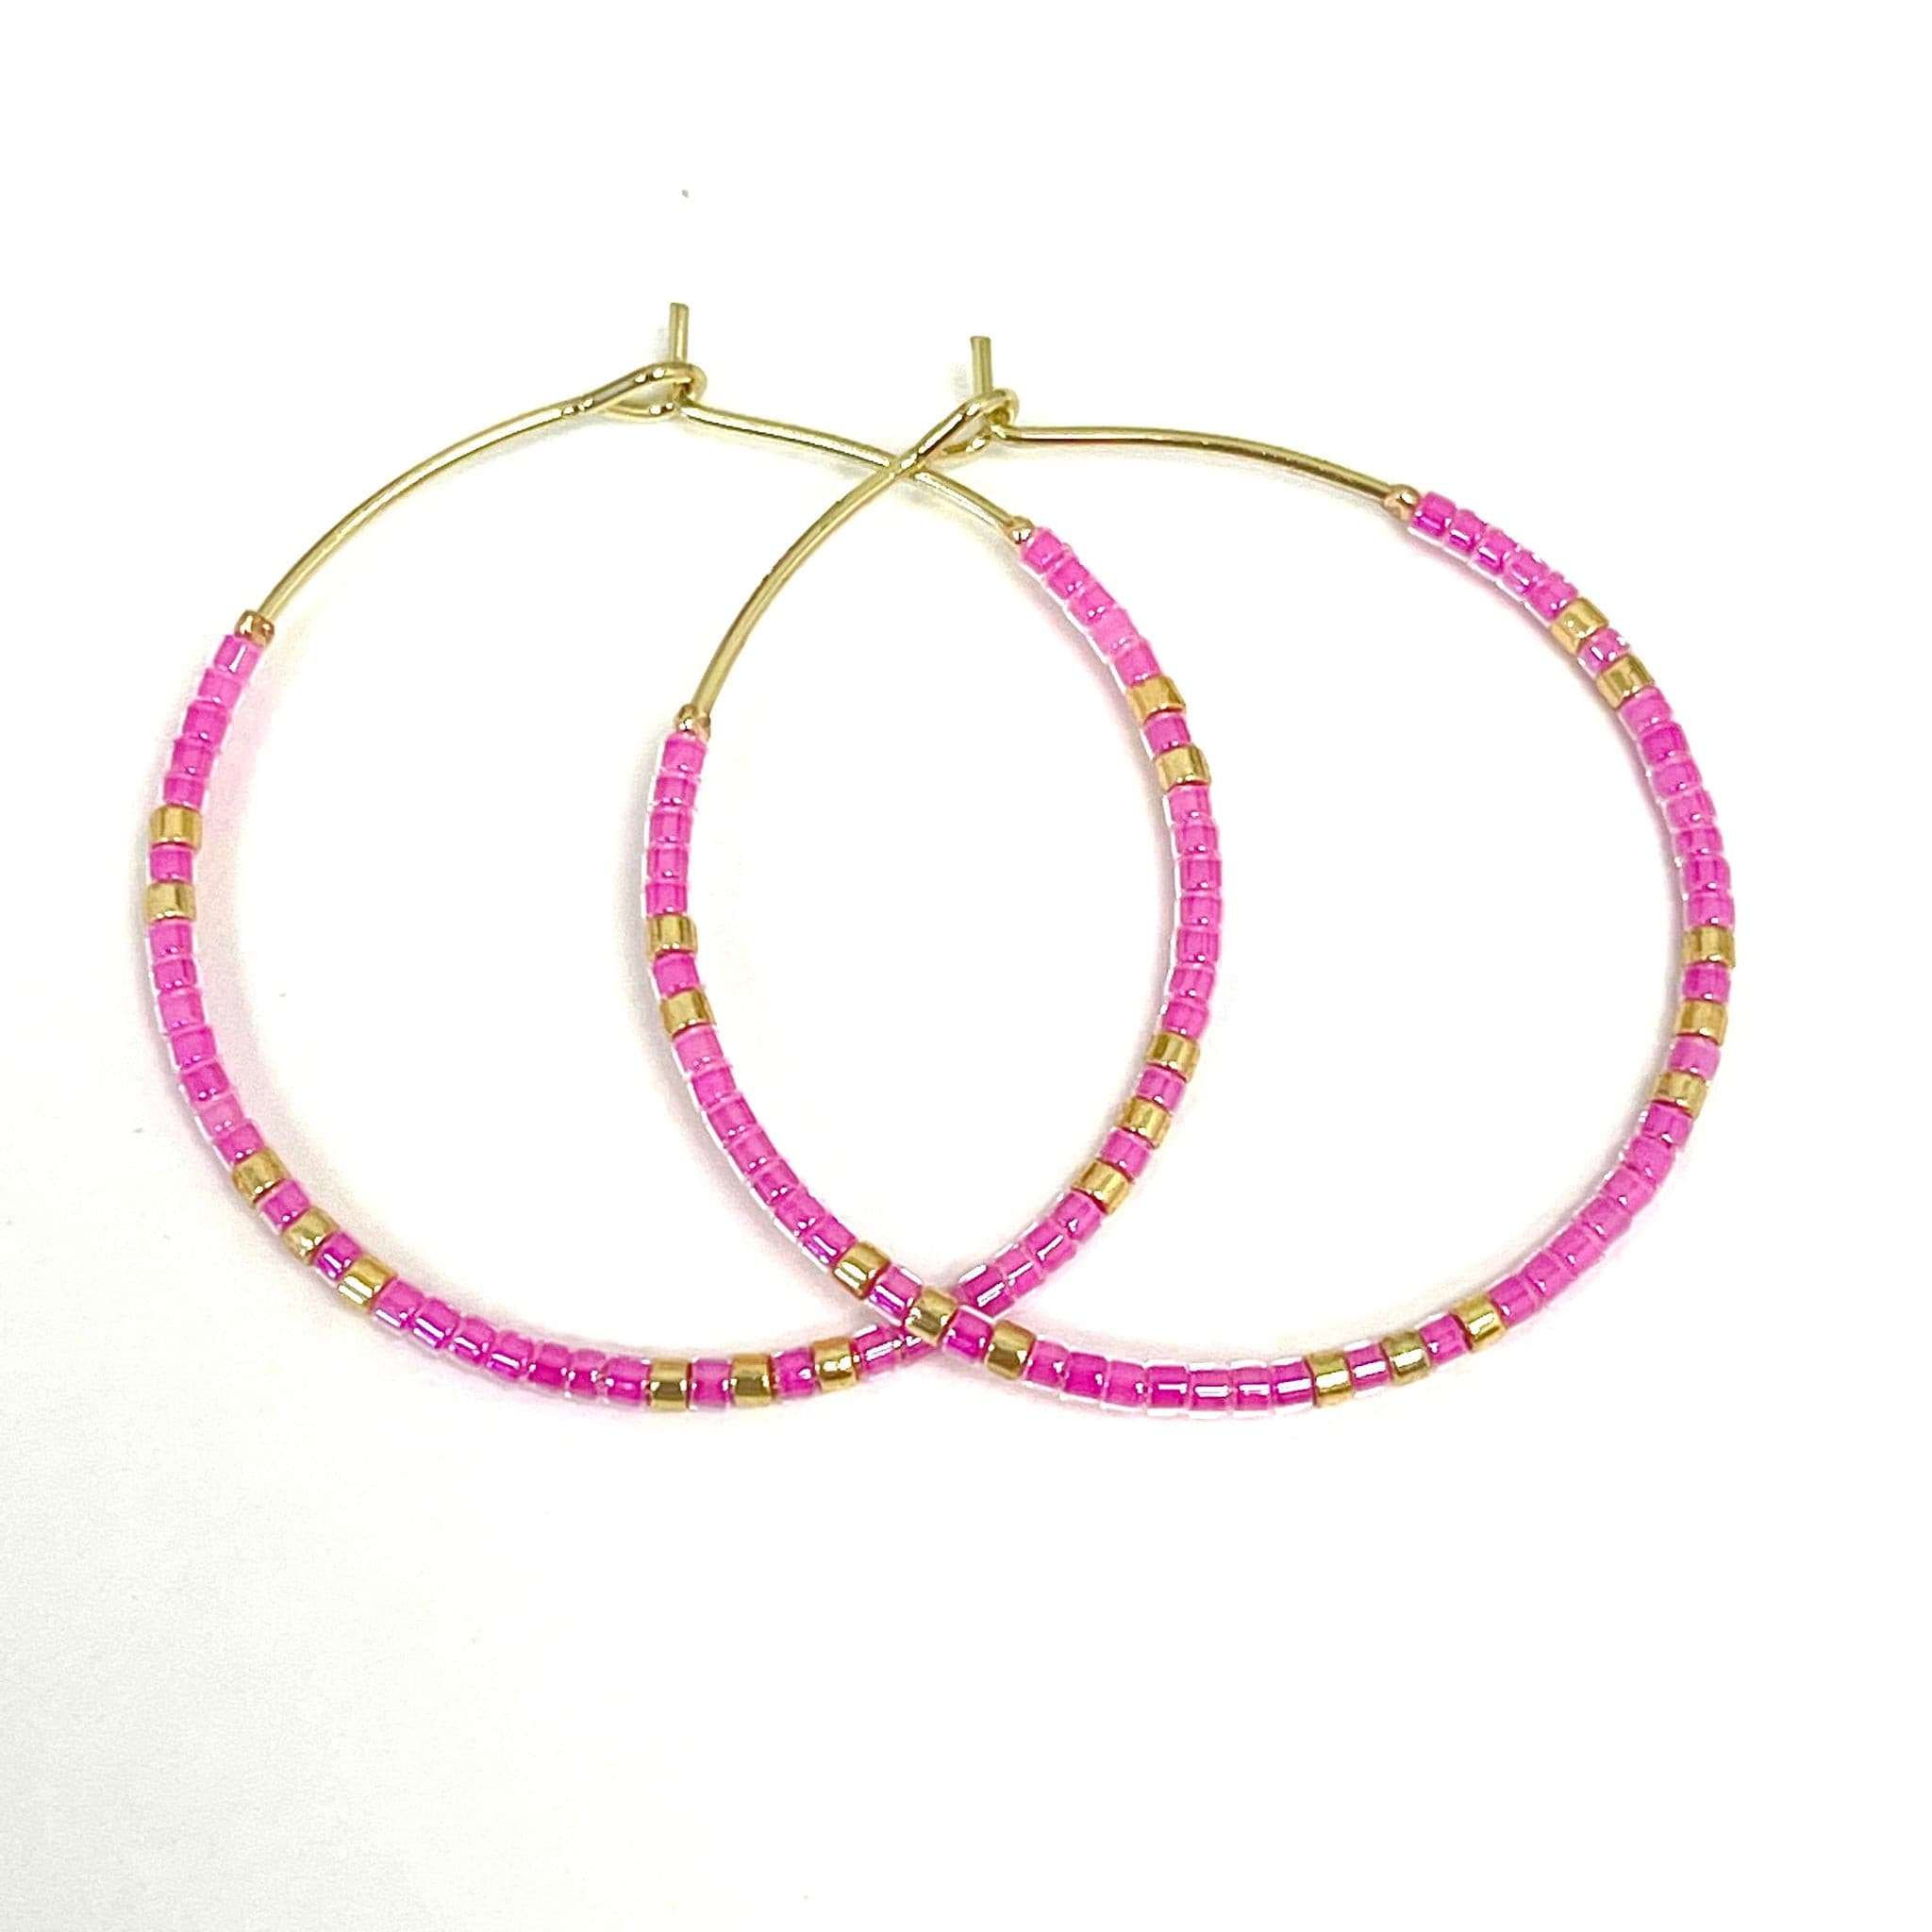 Caryn Lawn Baja Hoop Earrings in Pink.